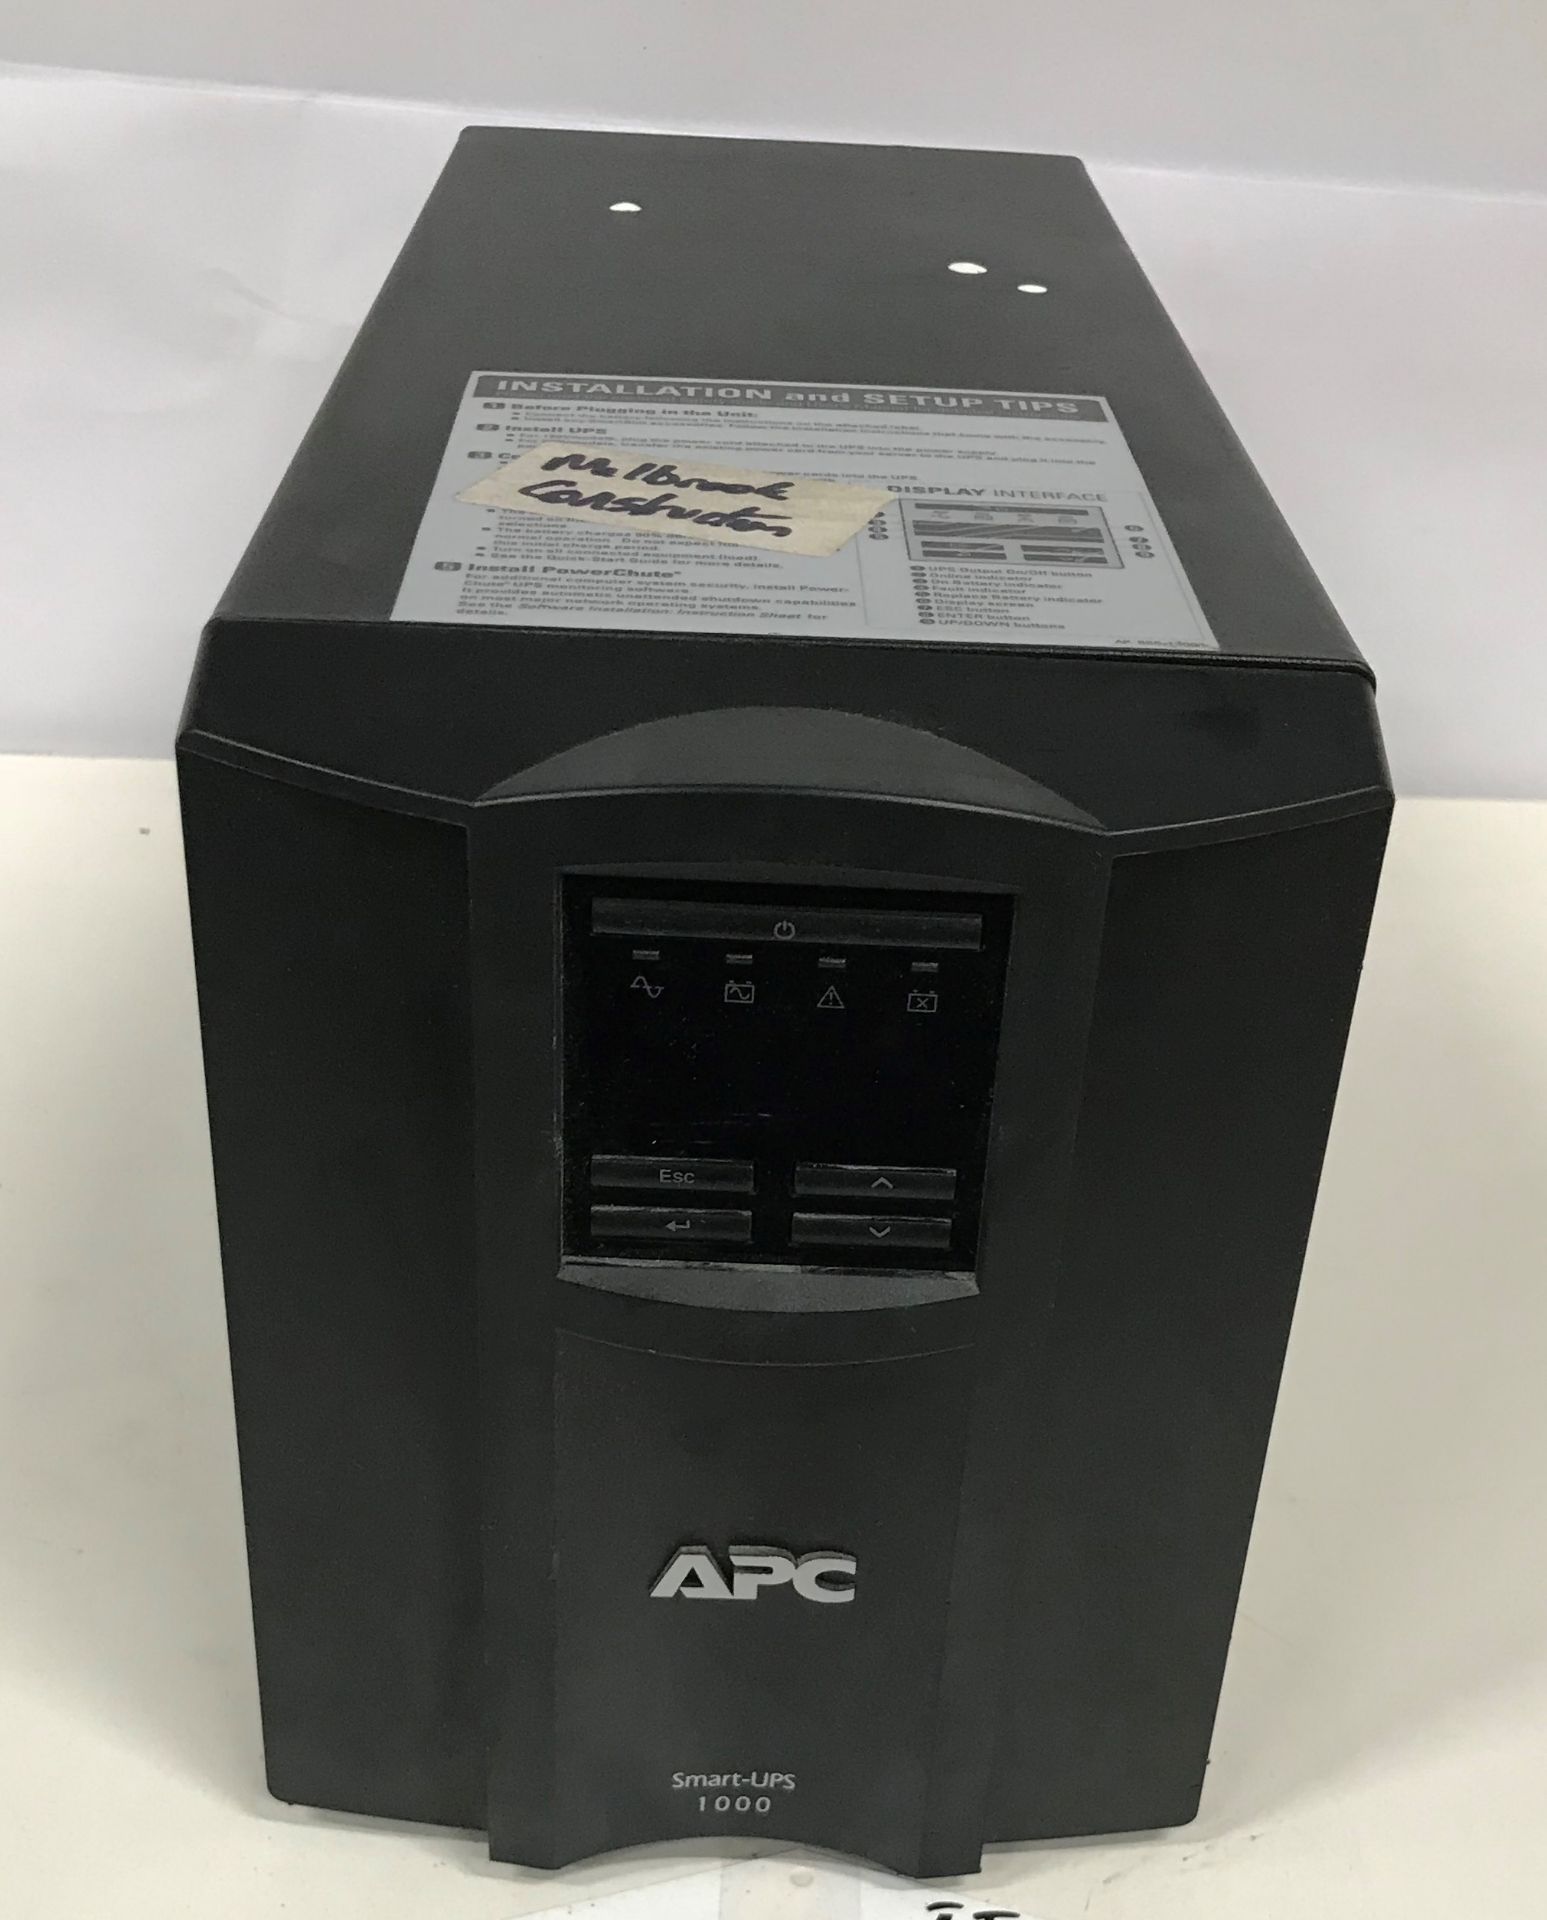 2 x APC Smart-UPS. See description.